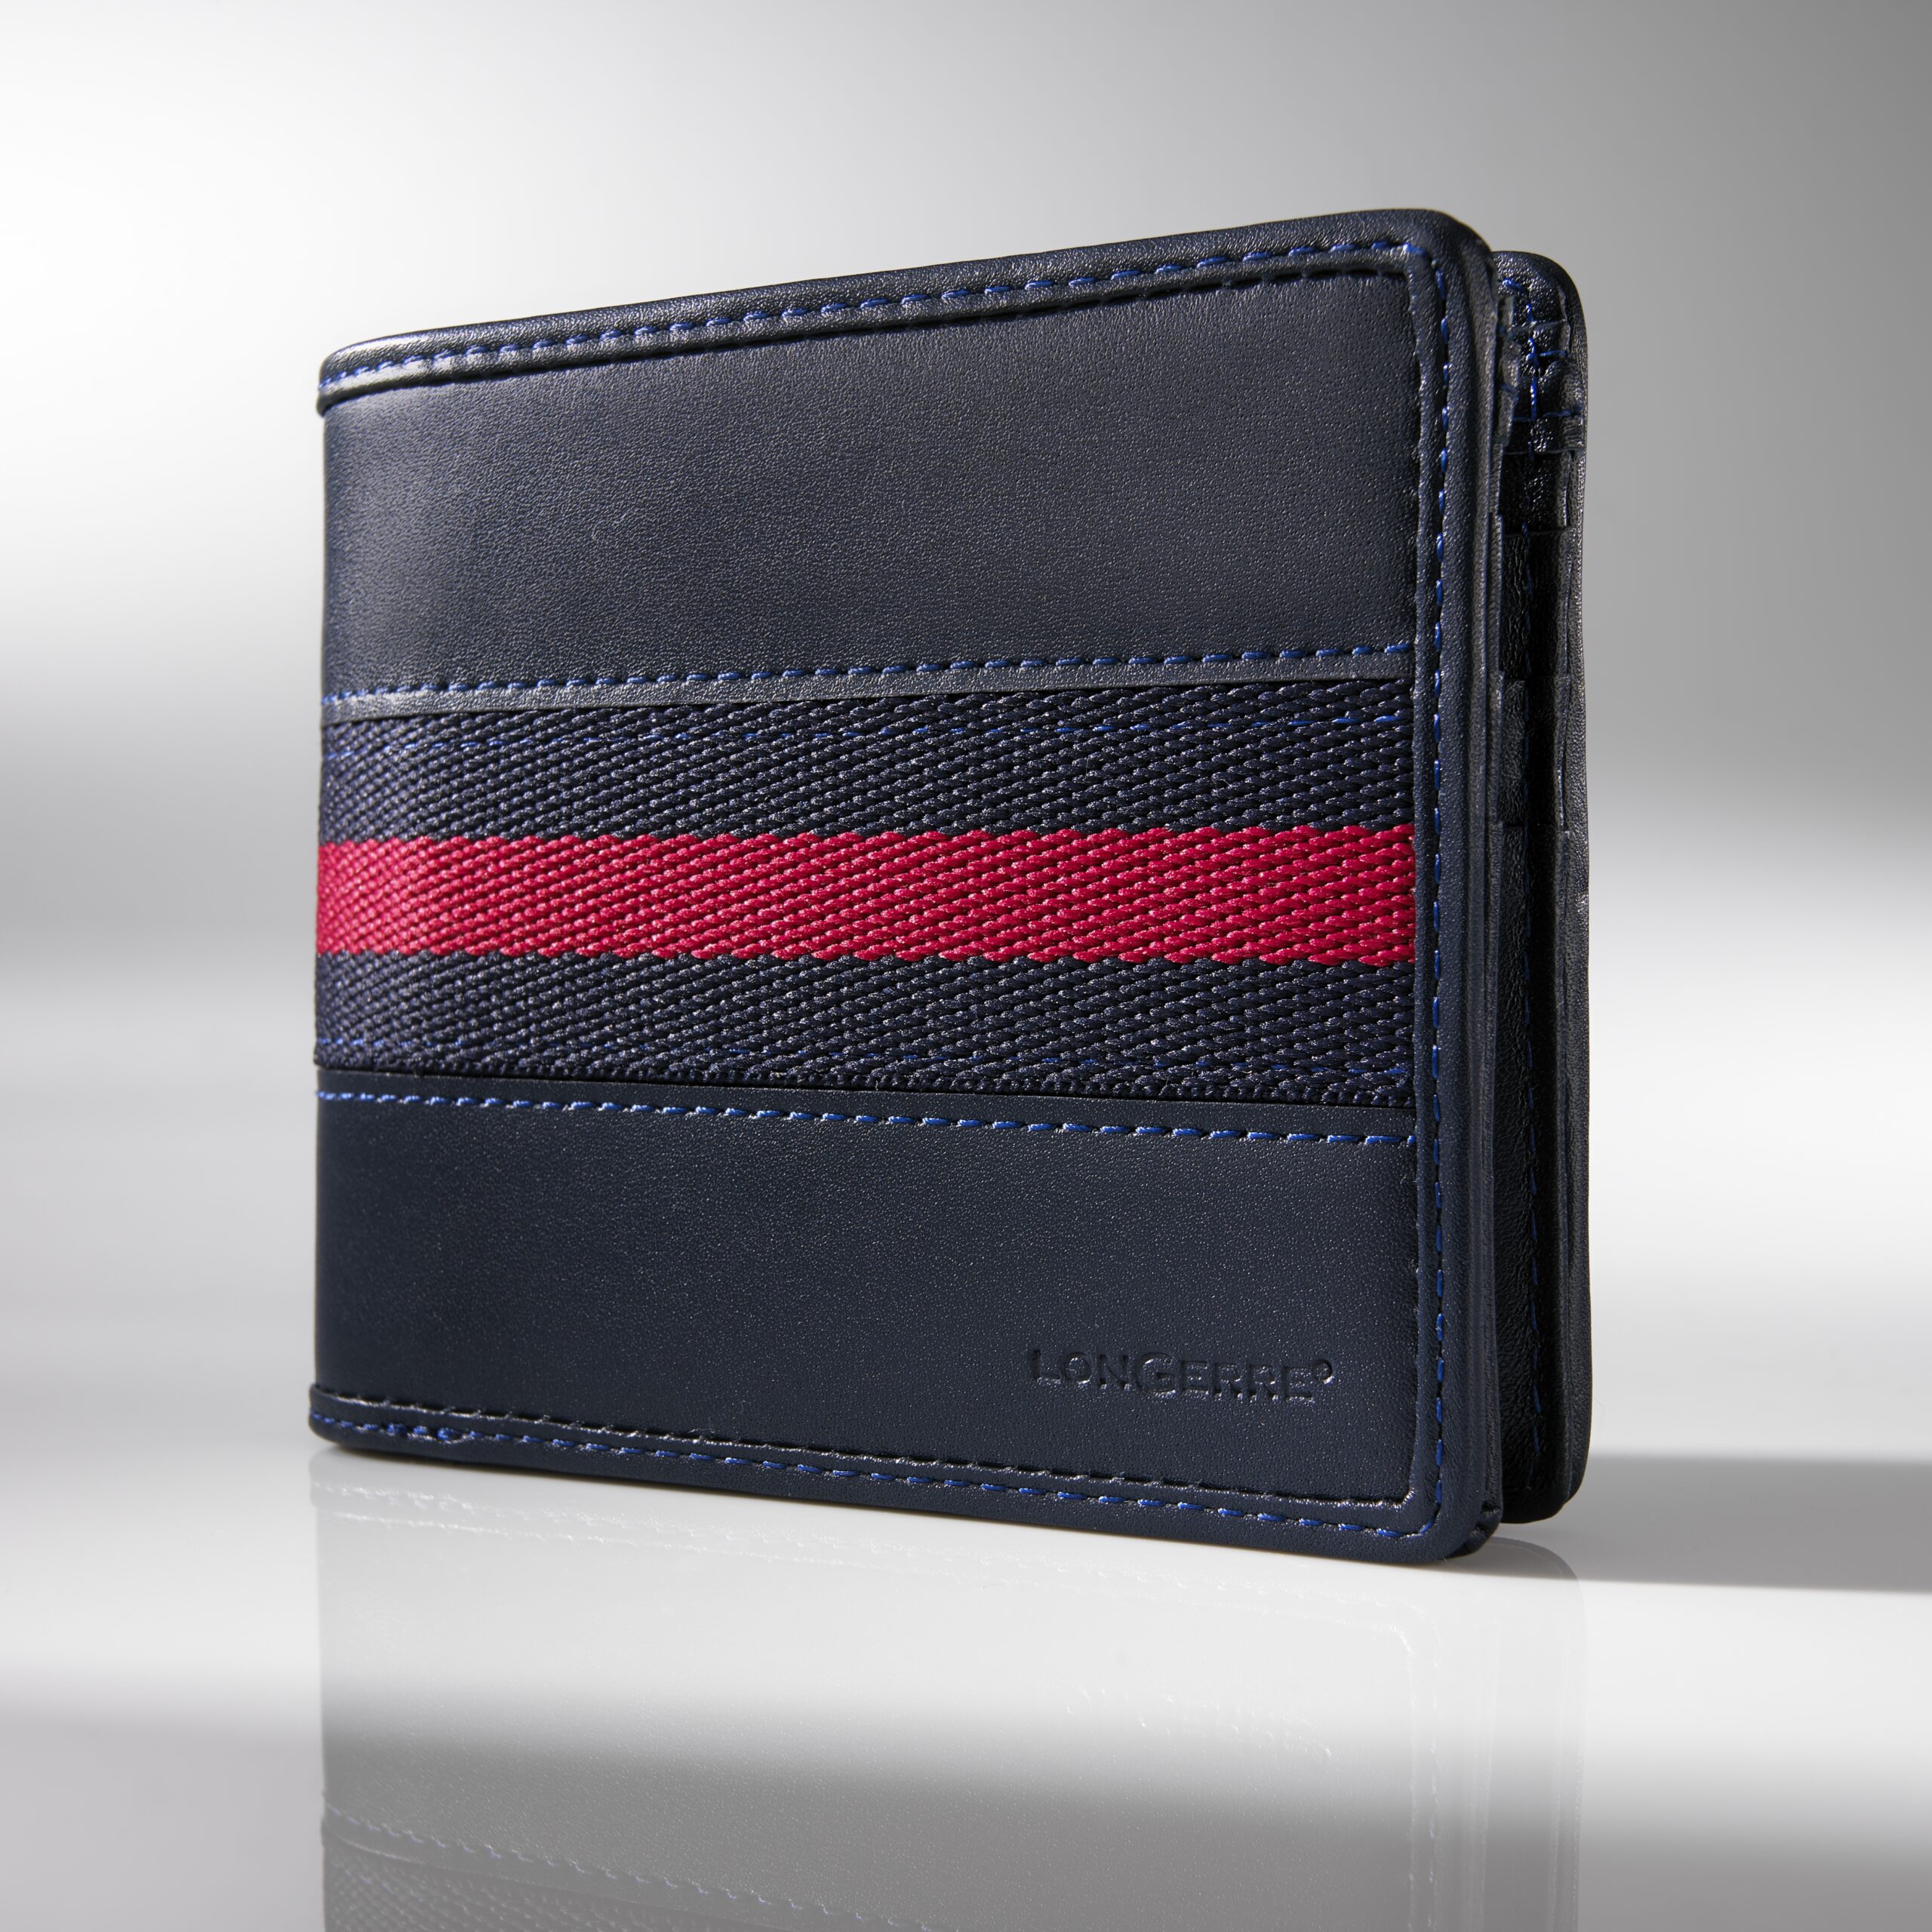 Colorissimo Conrad Leather Wallet